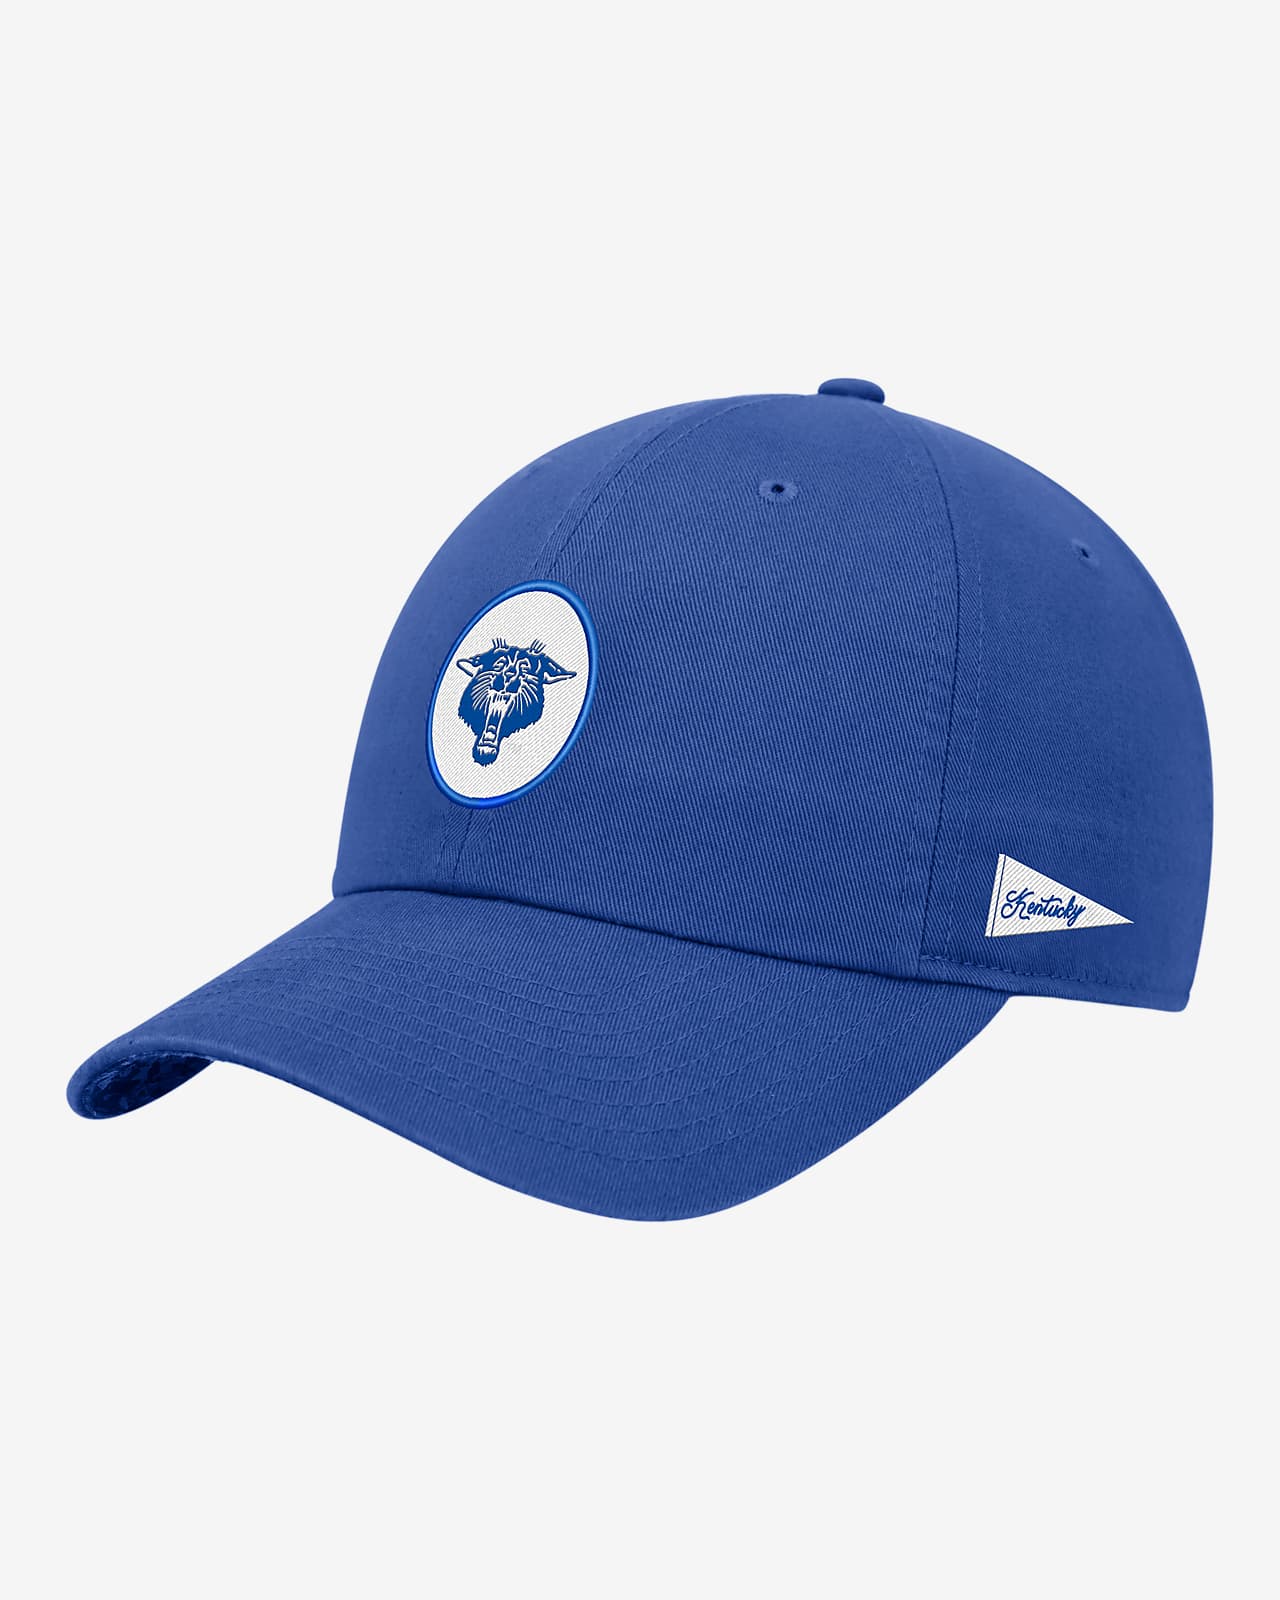 Gorra universitaria ajustable Nike con logotipo de Kentucky